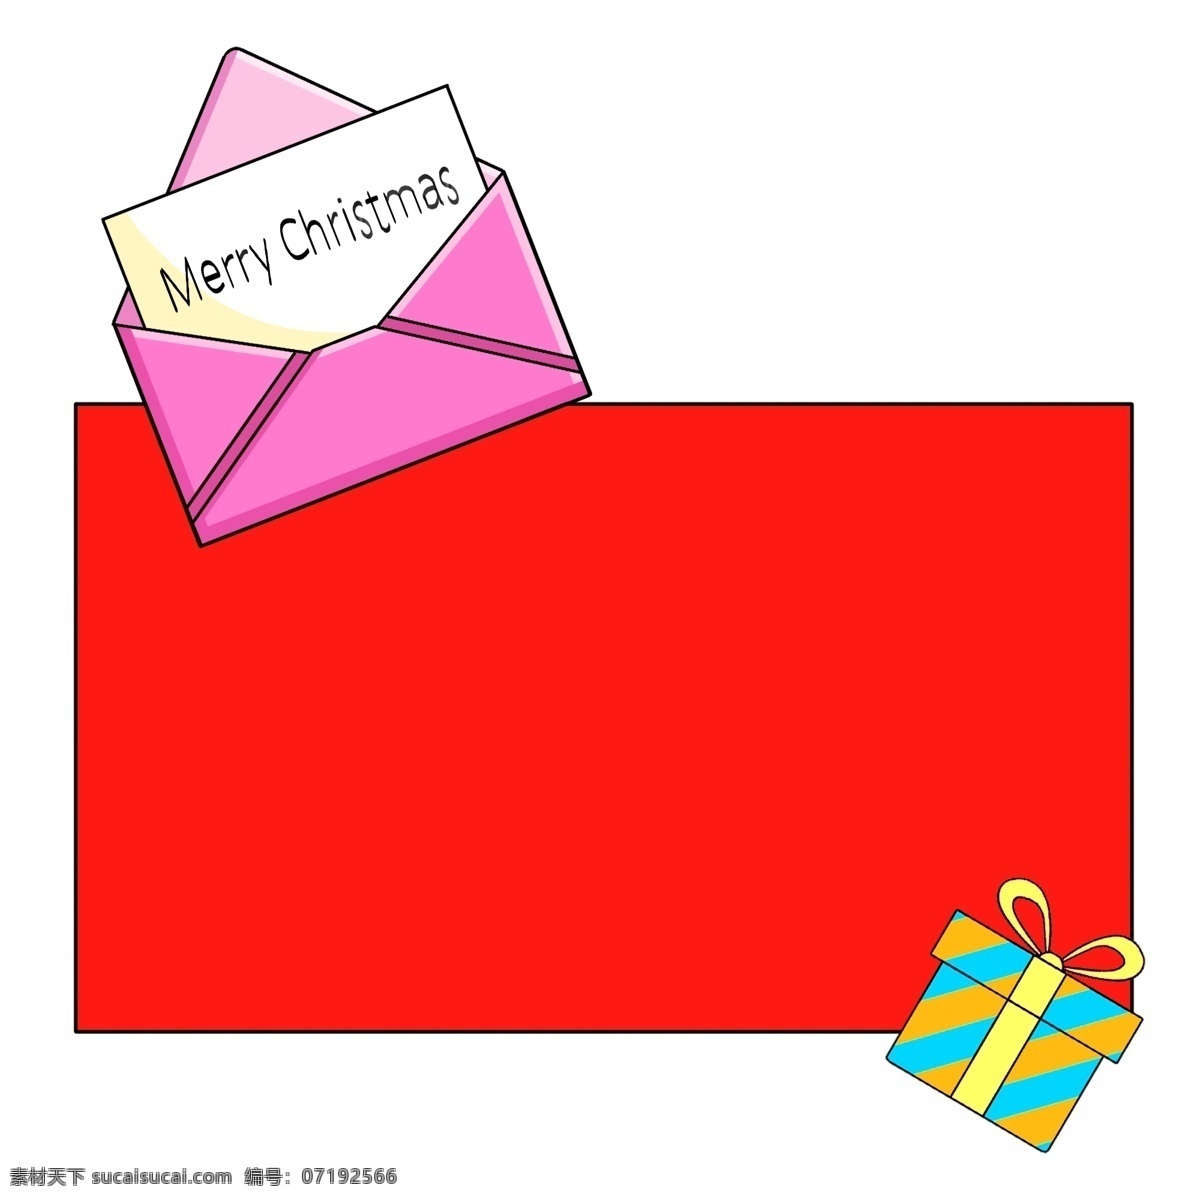 手绘 圣诞 礼物 边框 插画 红色底纹边框 礼品盒边框 长方形边框 黑色字母边框 卡通 粉色 信封 蓝 黄 条 盒